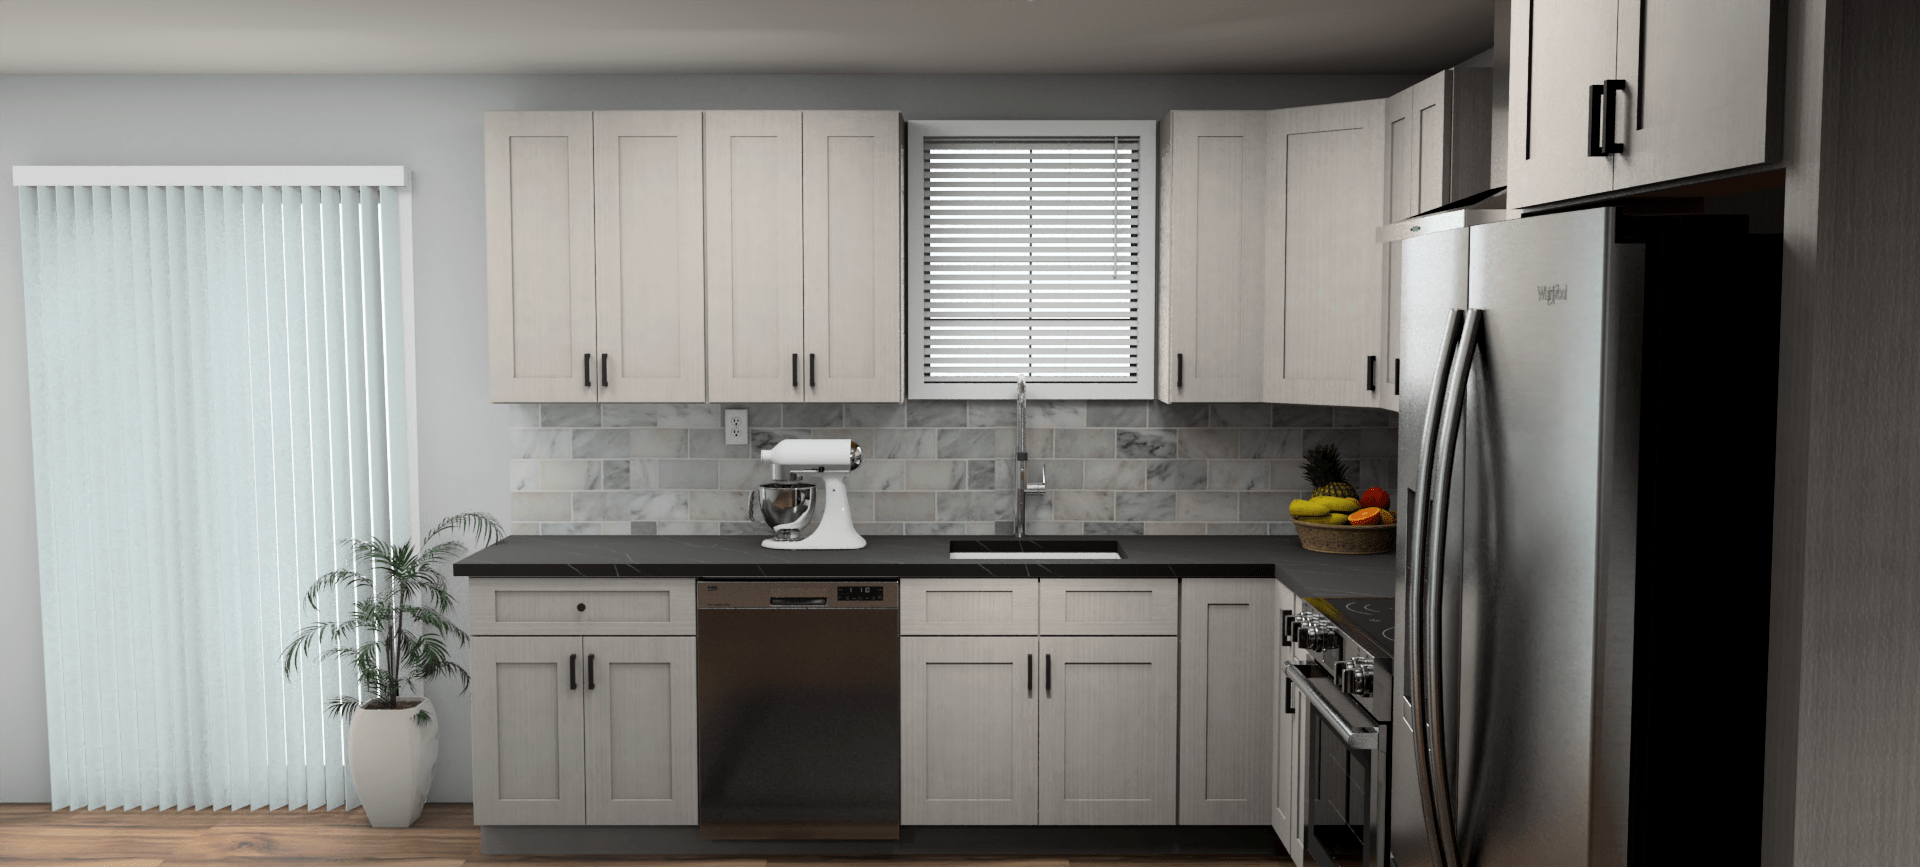 Fabuwood Allure Galaxy Horizon 10 x 12 L Shaped Kitchen Side Layout Photo